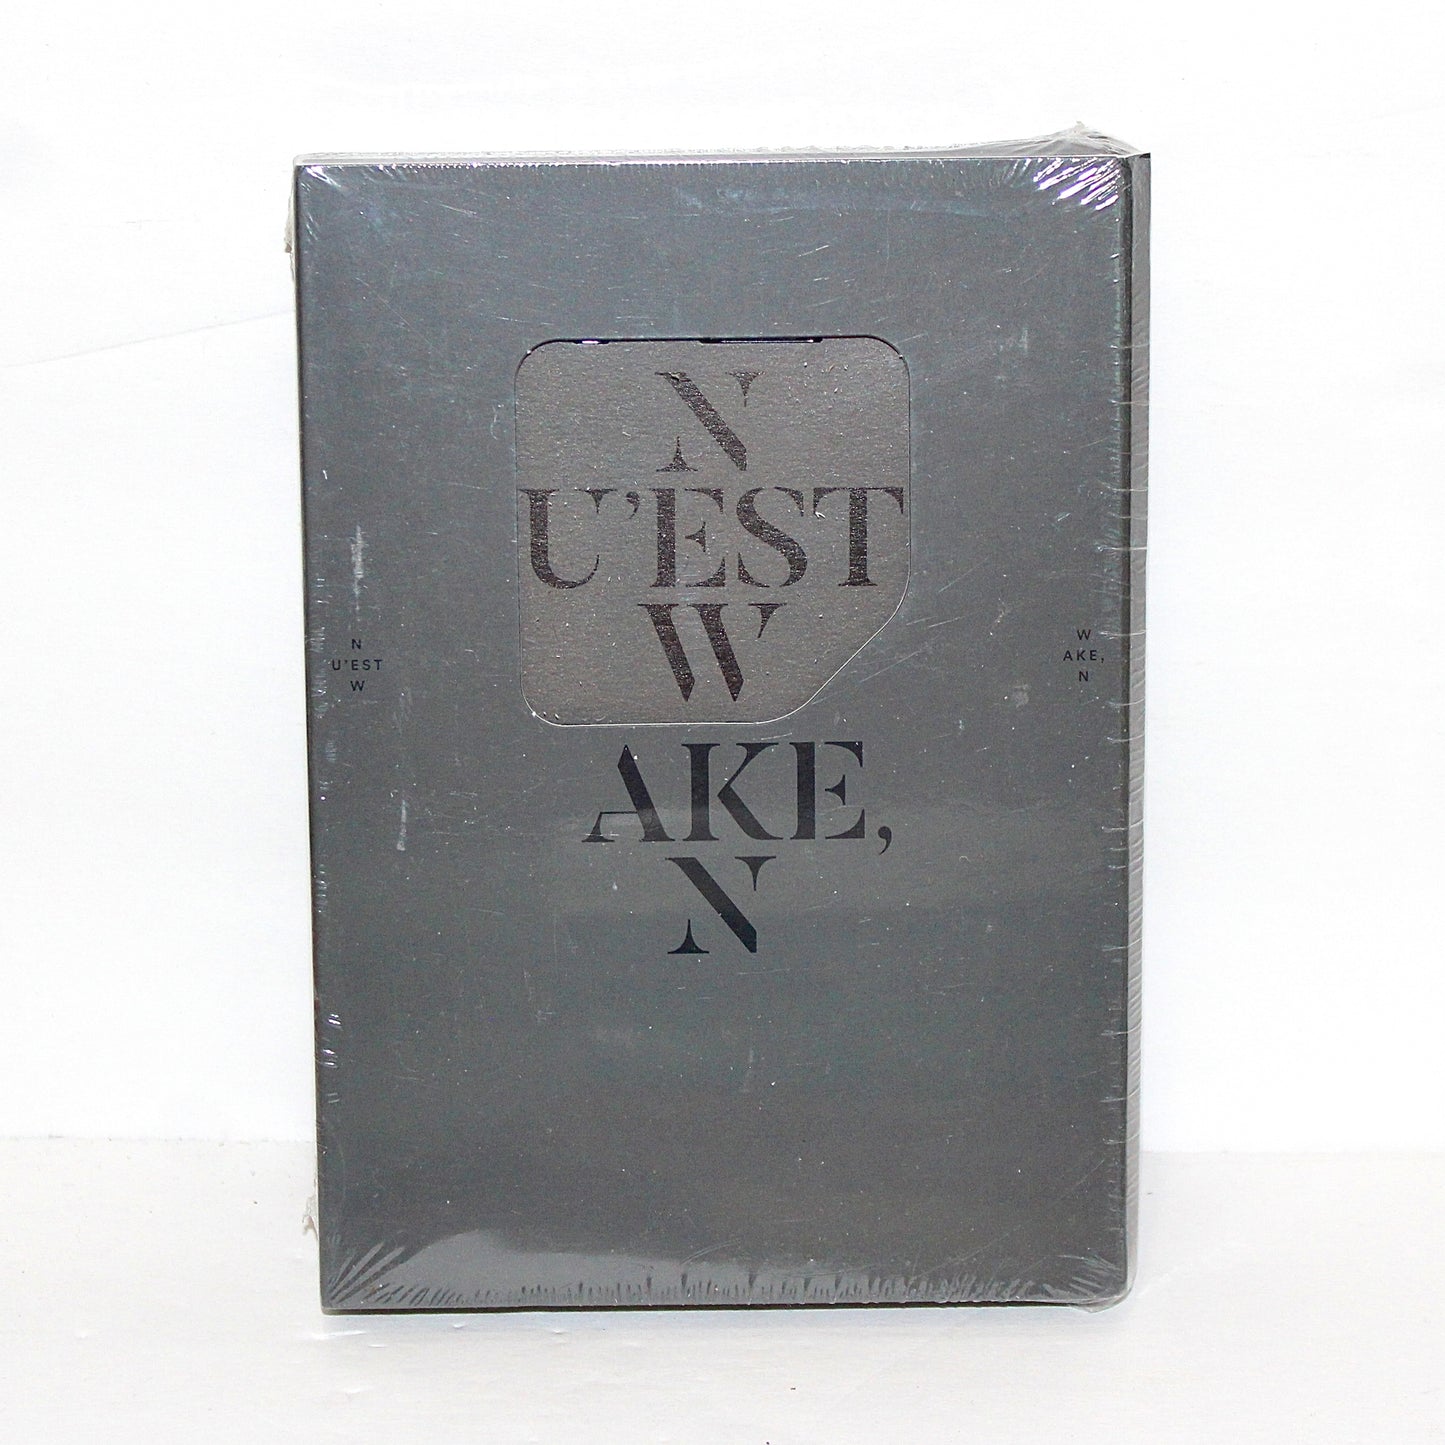 NU'EST W 3rd Mini Album: WAKE, N | Kihno Kit